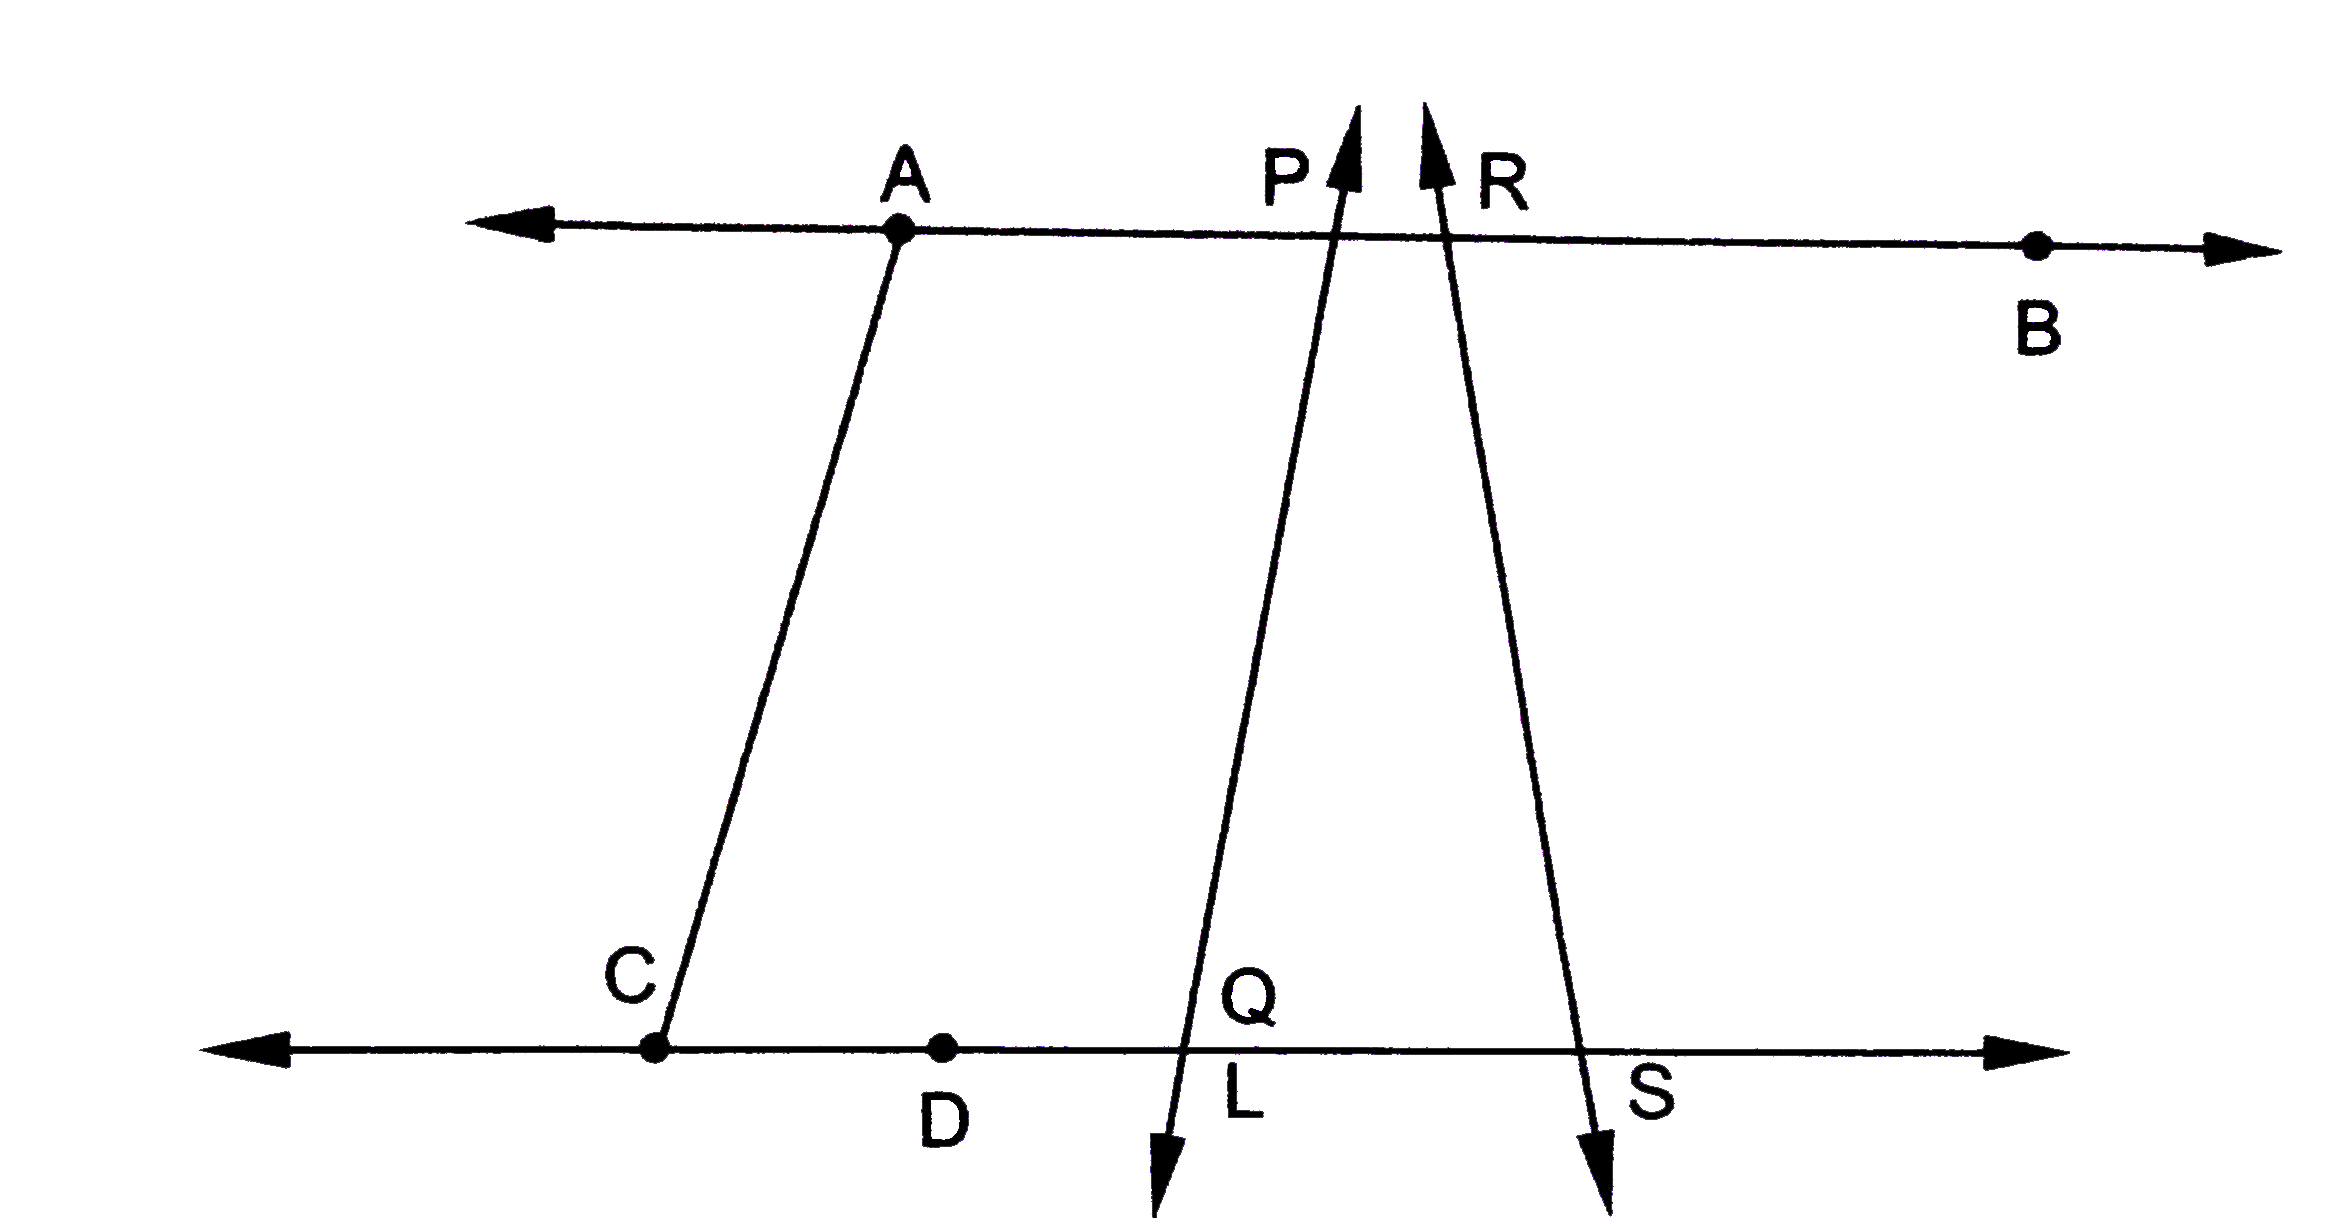 चित्र 7.17 में, निम्नलिखित के नाम दीजियेः    (i) पाँच रेखाखण्डों के।   (ii)  पाँच किरणों के।    (iii) चार संरख बिन्दुओं के।    (iv) परस्पर प्रतिच्छेद न करने वाले रेखाखण्डों के दो युग्मों के।